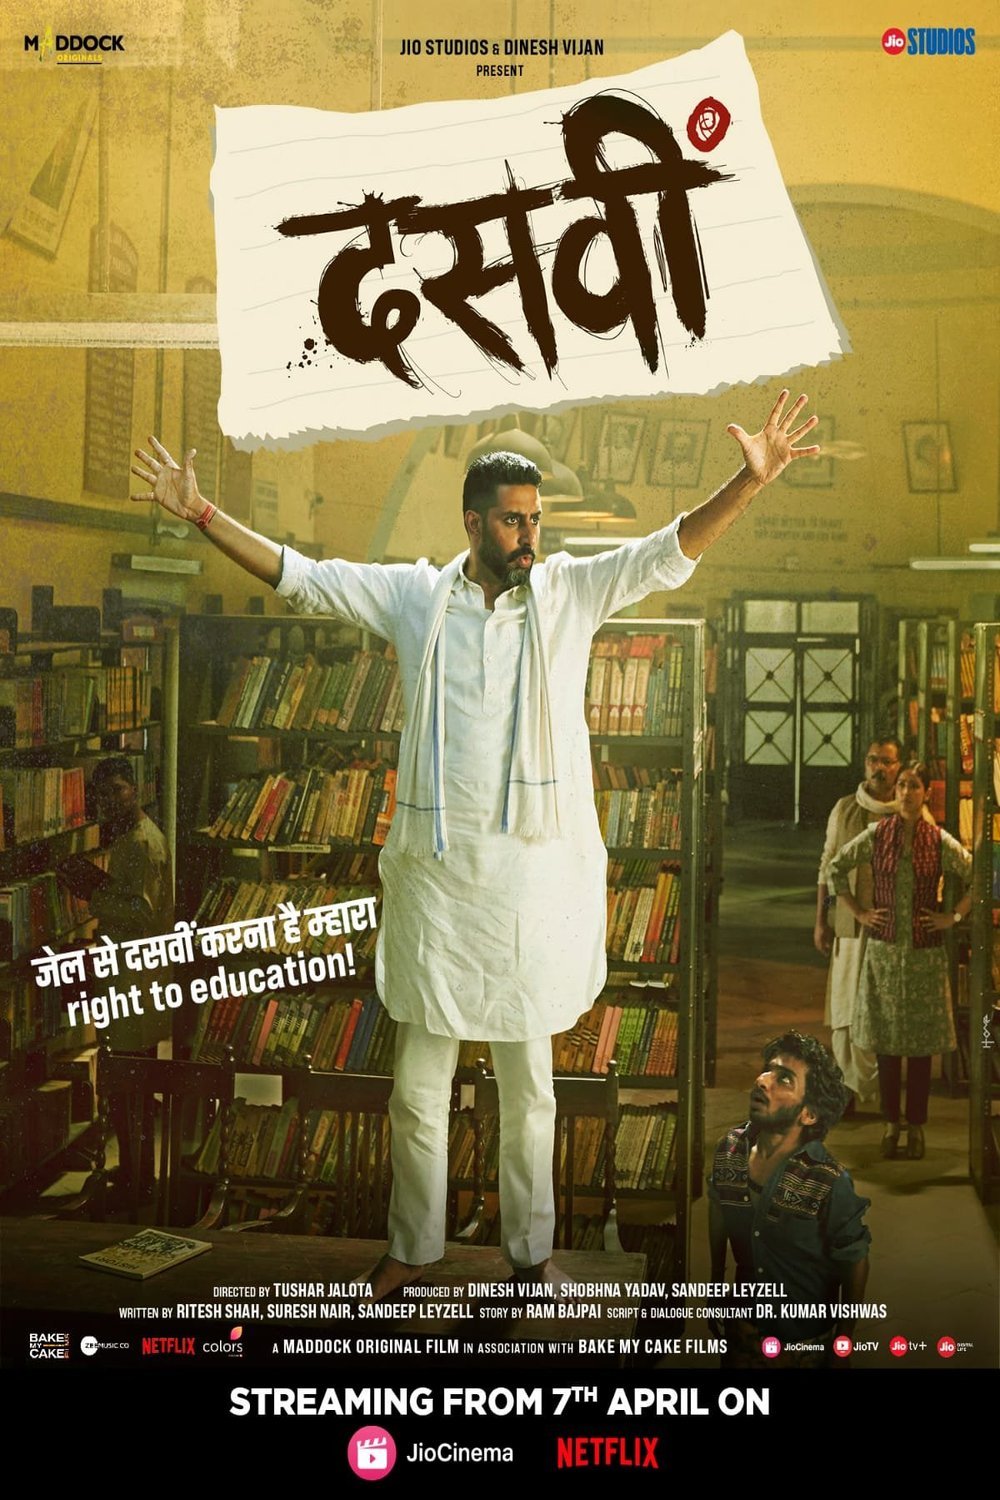 Hindi poster of the movie Dasvi